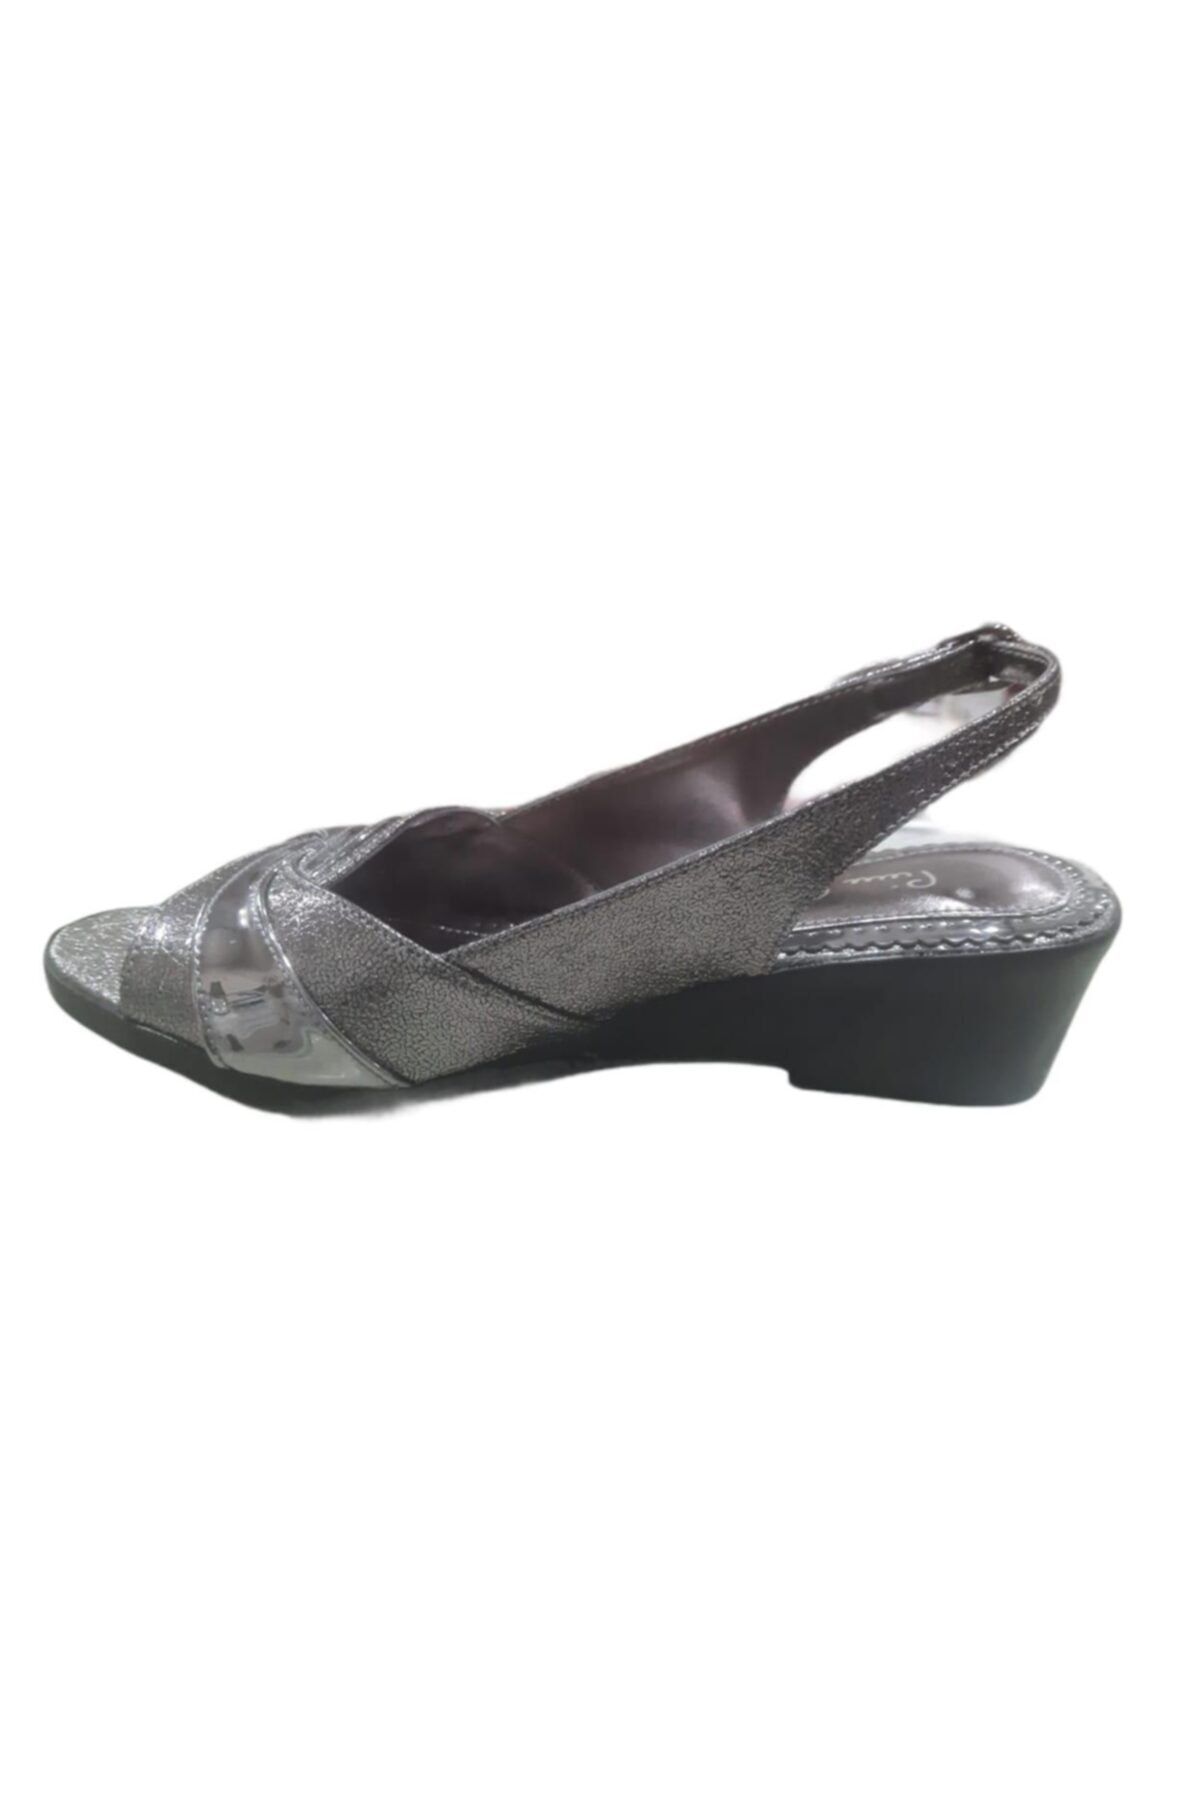 Pierre Cardin Kadın Gri Dolgu Topuklu Ayakkabı 21y